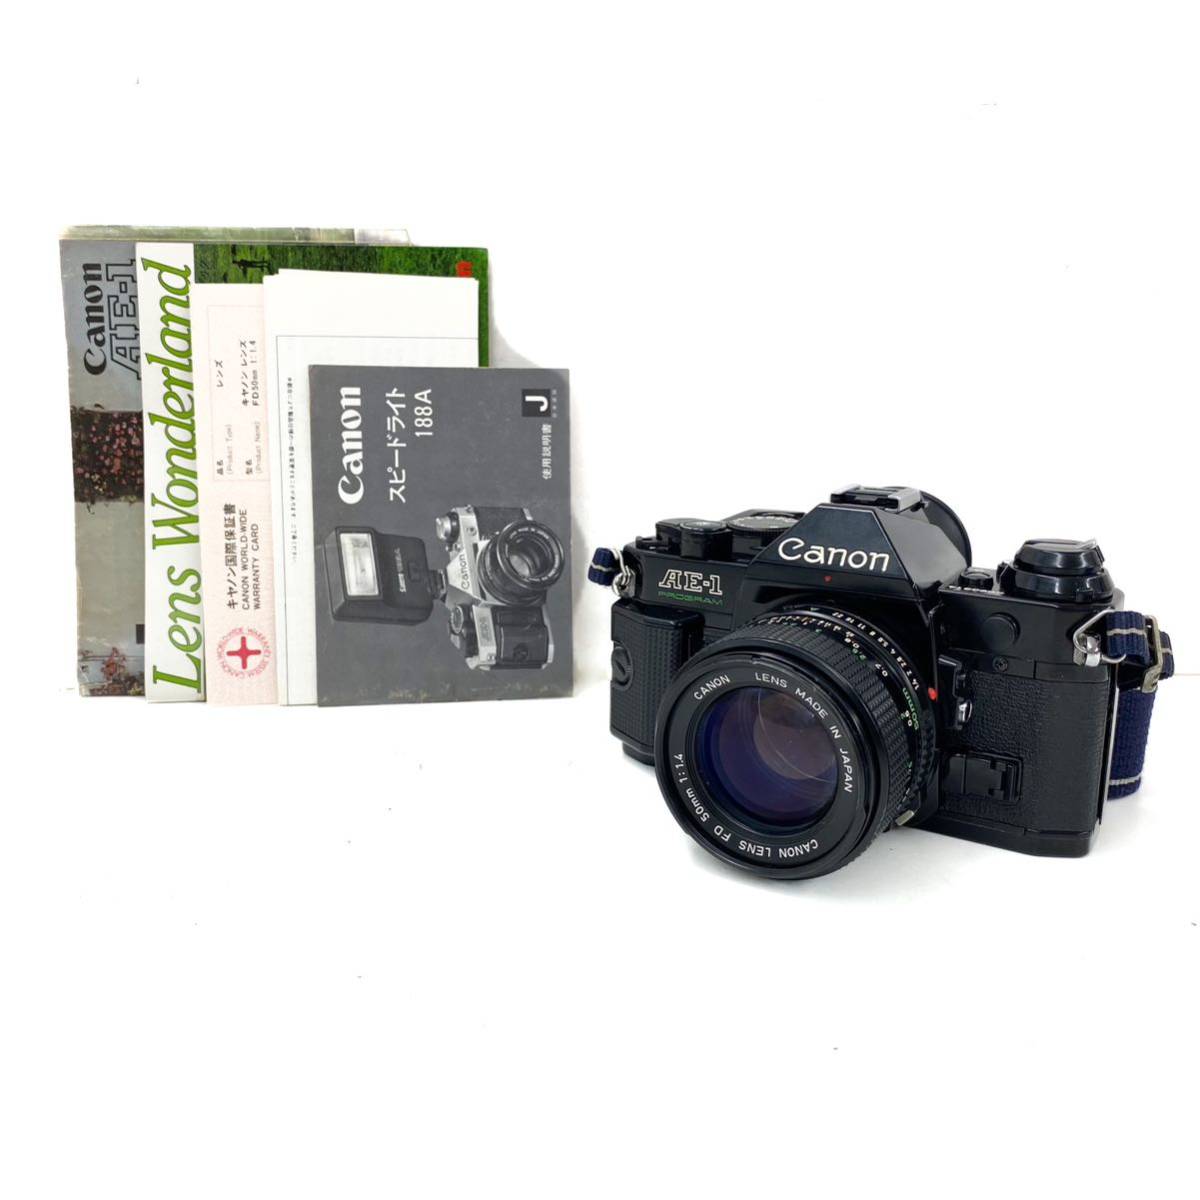 埼P♪ Canon キヤノン AE-1 PROGRAM ブラック ボディ + LENS FD 50mm 1